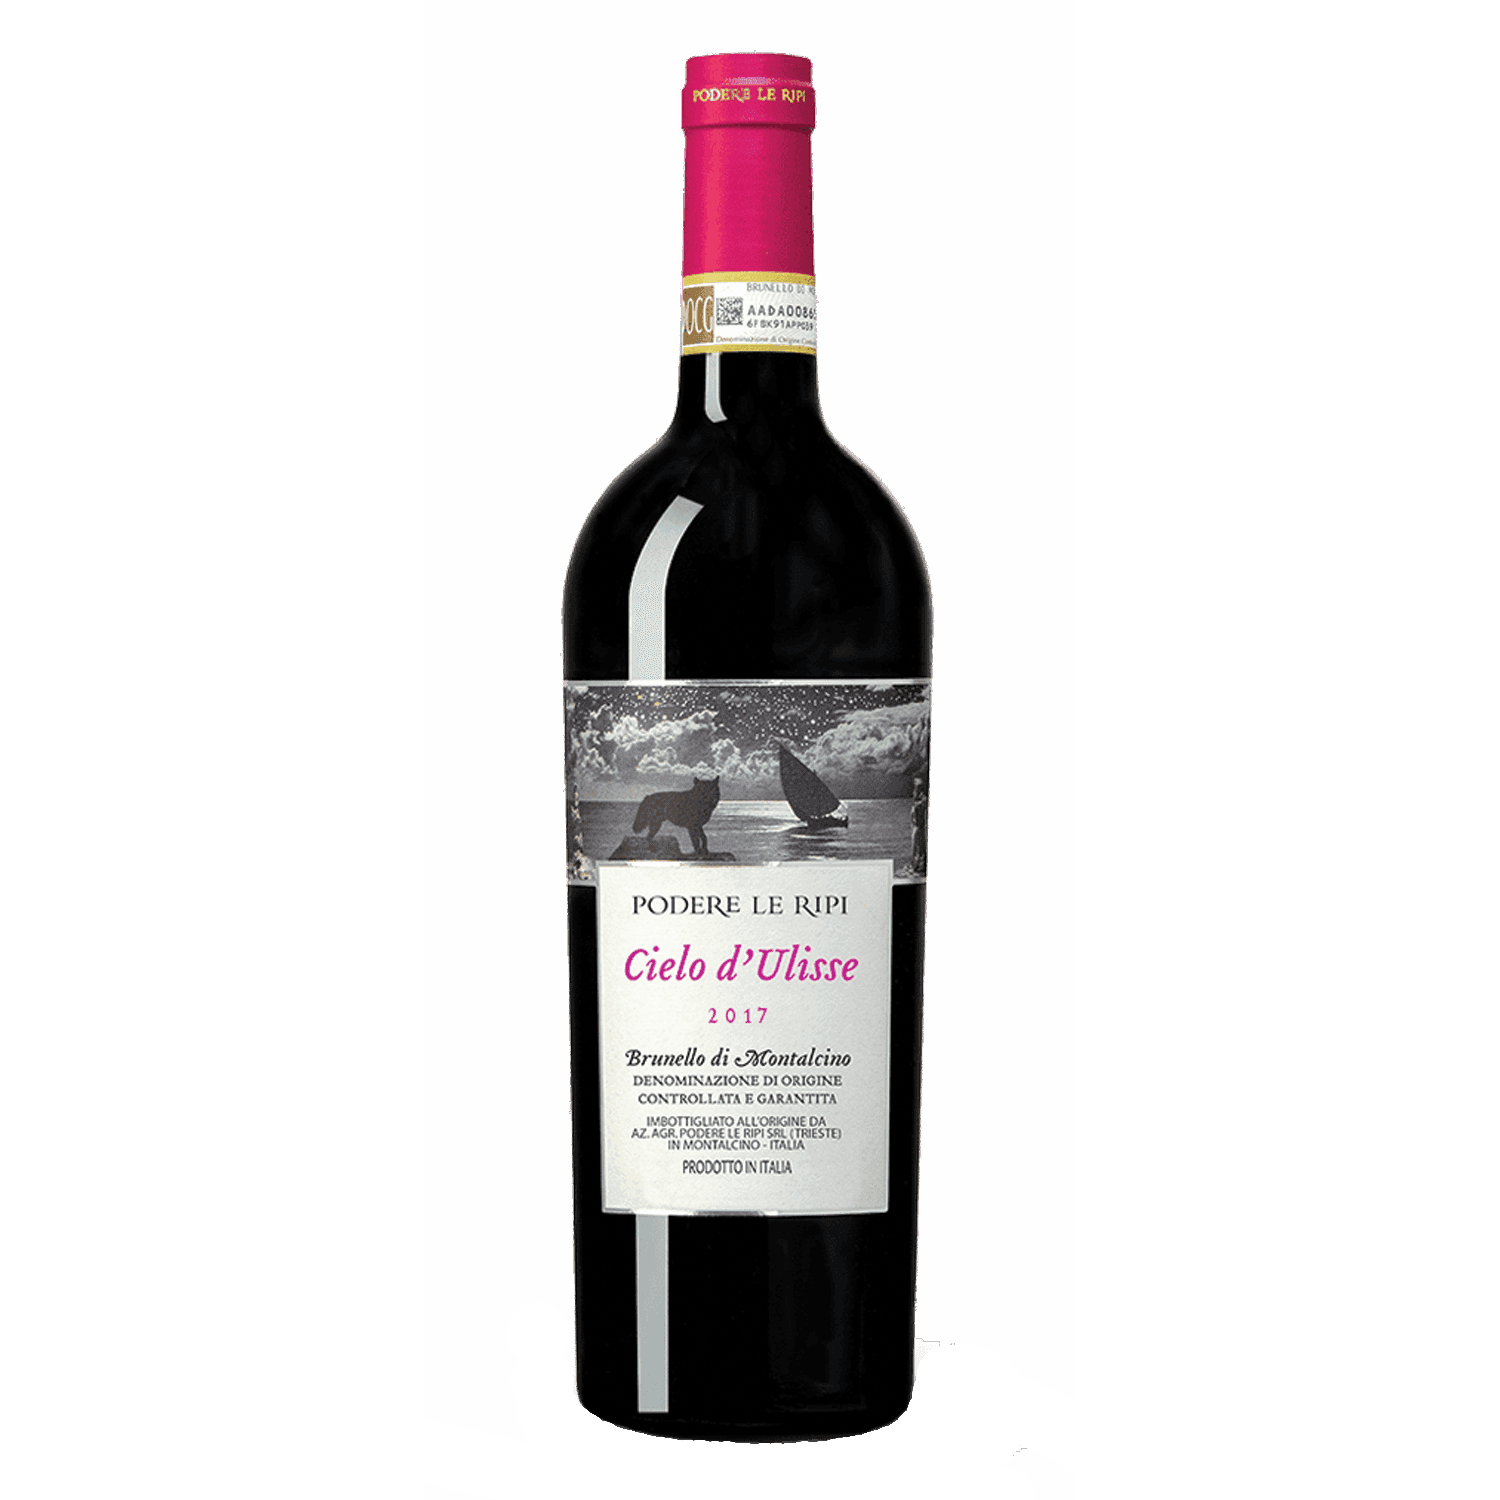 Selected image for PODERE LE RIPI Brunello di Montalcino Cielo d'Ulisse Crveno vino, 2016, 0.75l